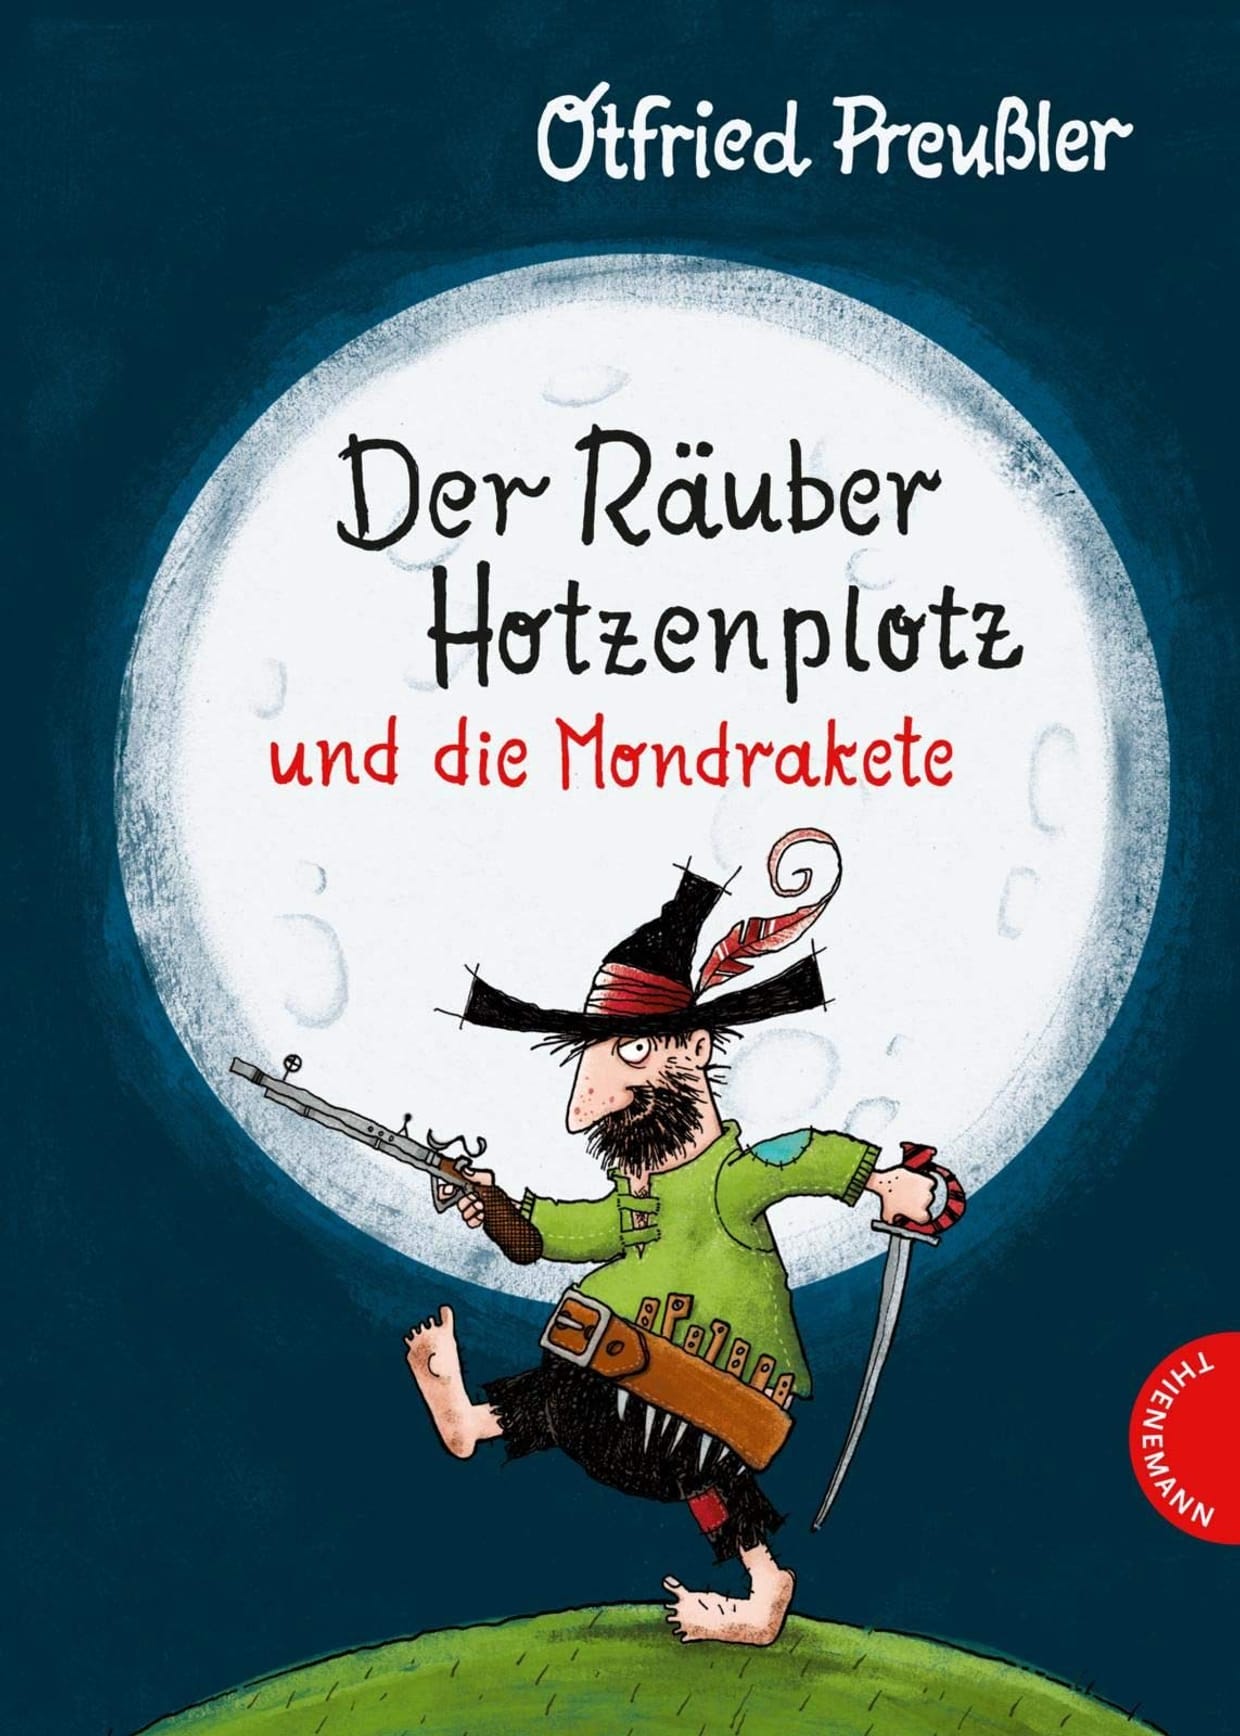 Der Räuber Hotzenplotz und die Mondrakete (Otfried Preußler) | Burghofbühne Dinslaken